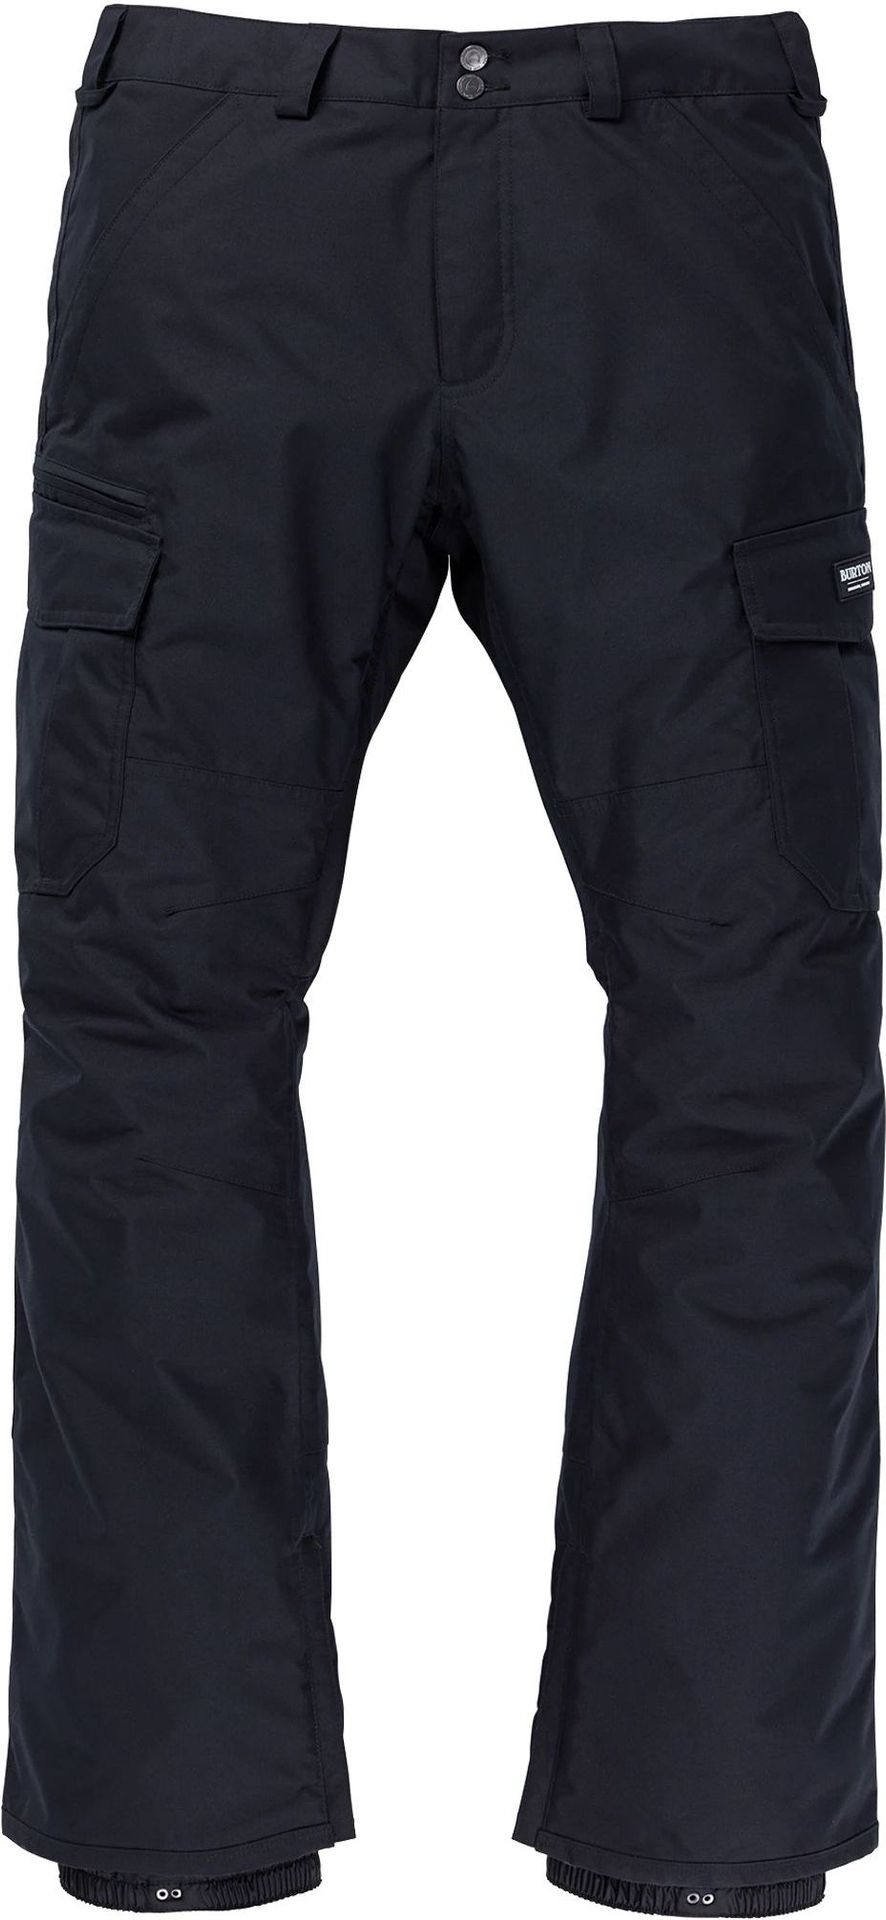 zimowe spodnie męskie BURTON CARGO PANT (REGULAR FIT) True Black + transport bezpłatny